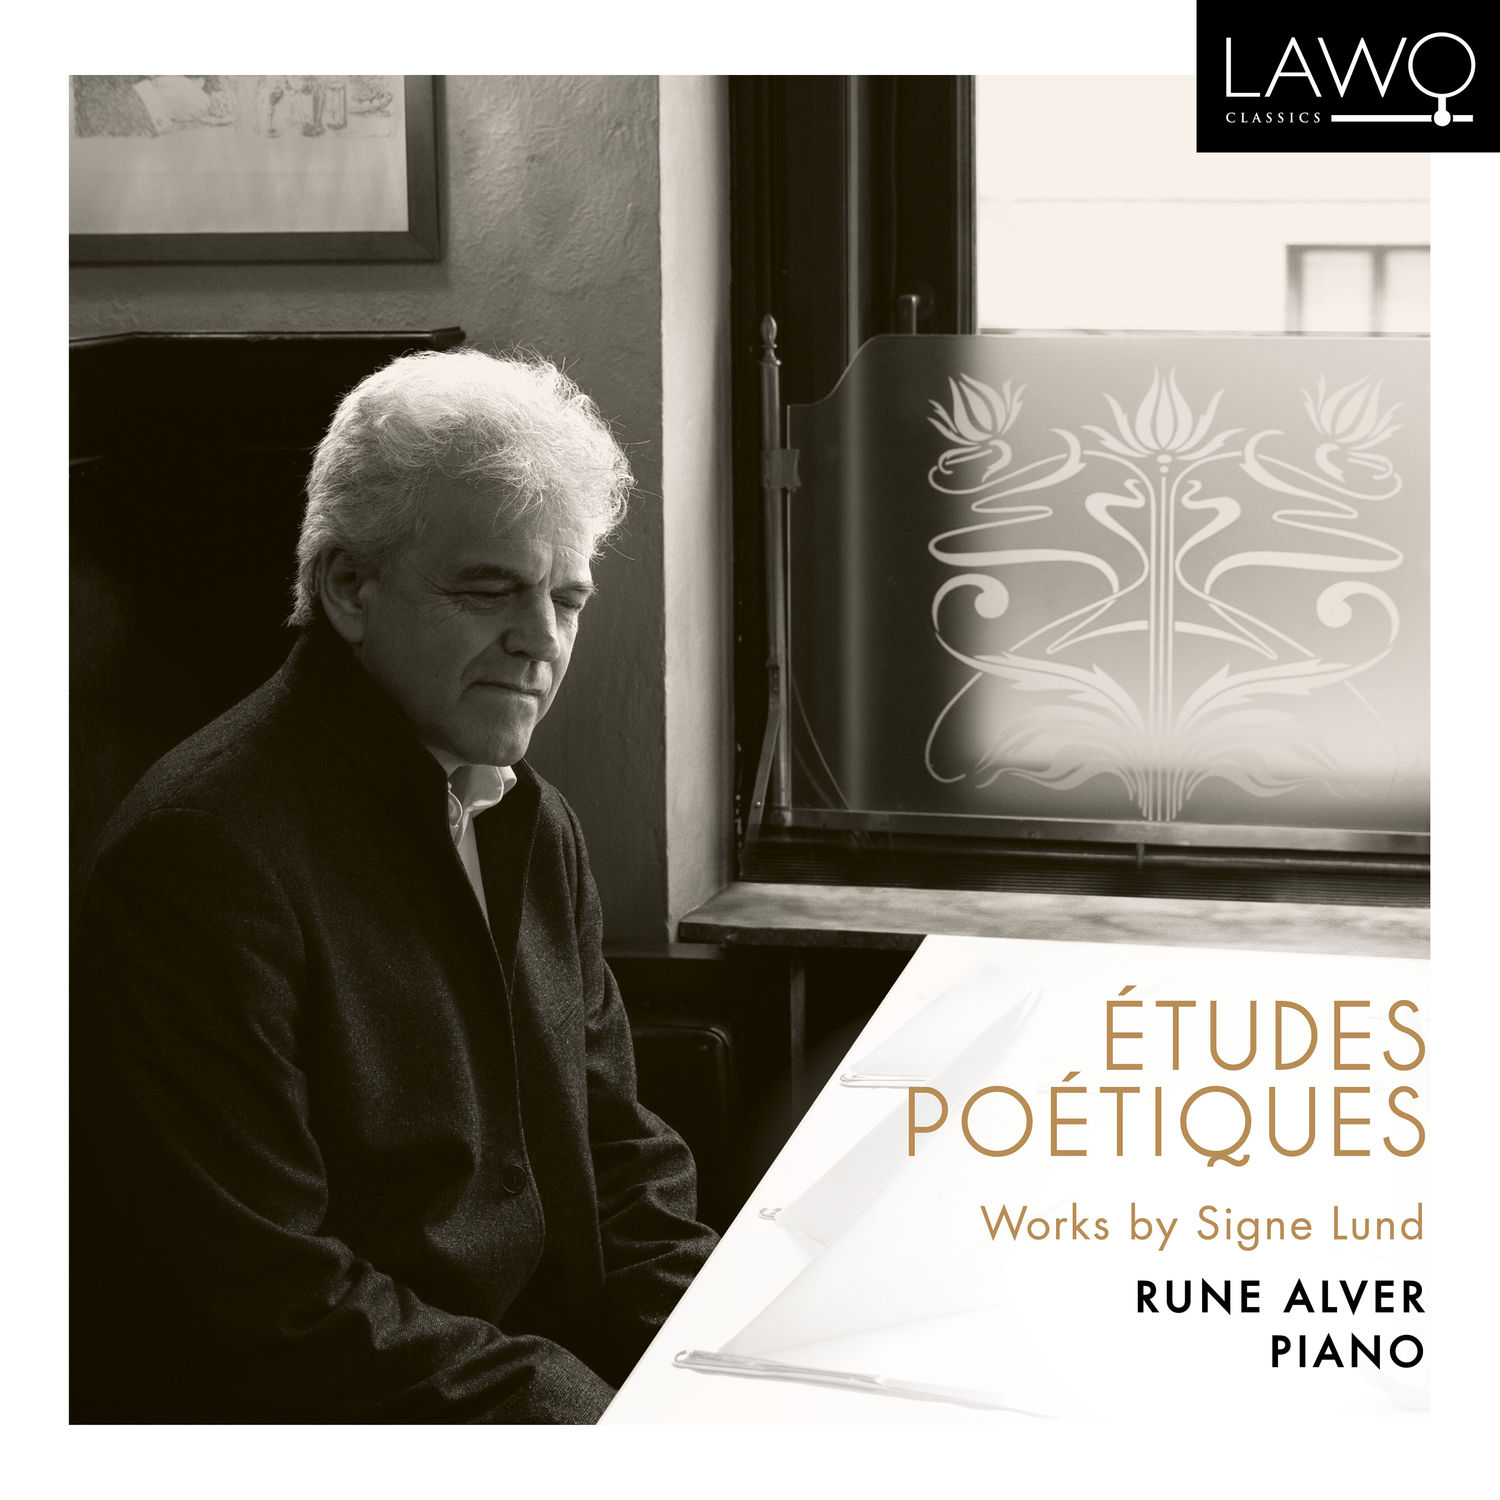 Rune Alver - Etudes Poetiques (2020) [FLAC 24bit/96kHz]